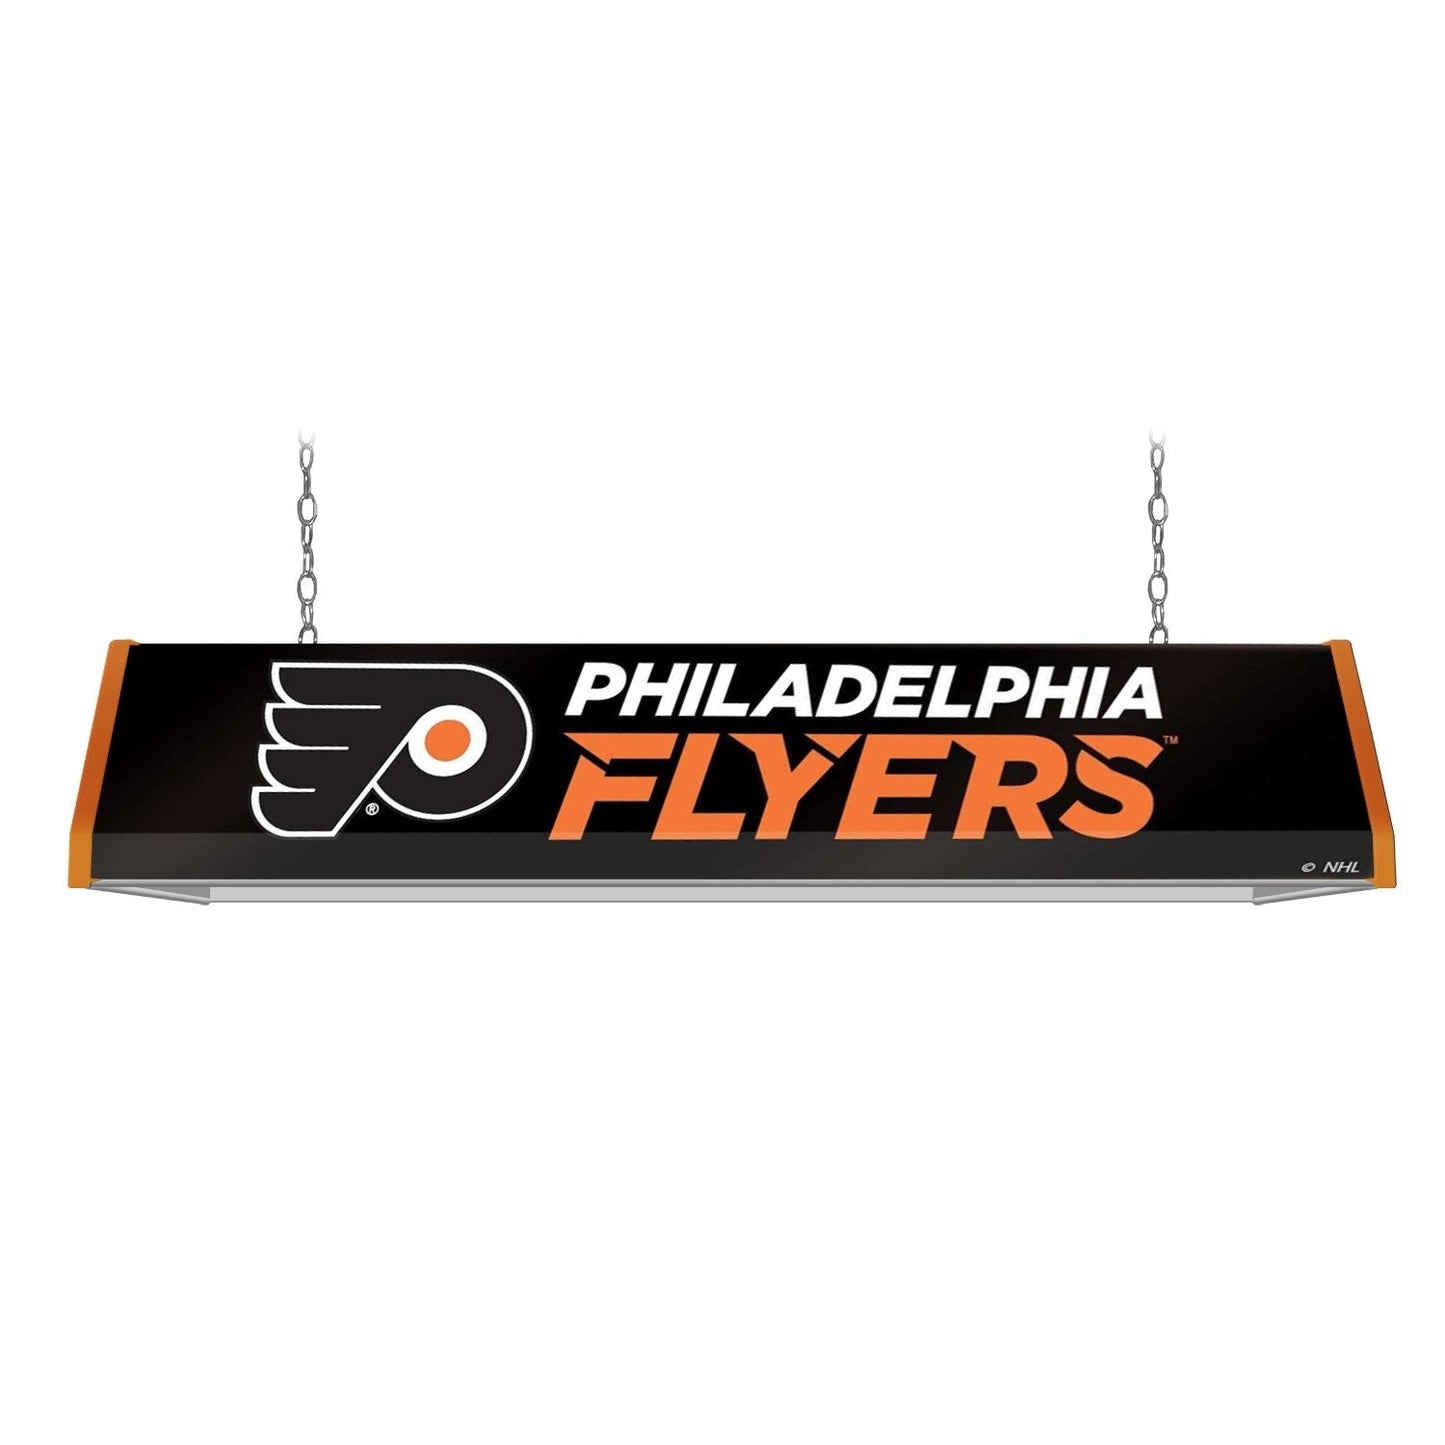 Philadelphia Flyers: Standard Pool Table Light - The Fan-Brand